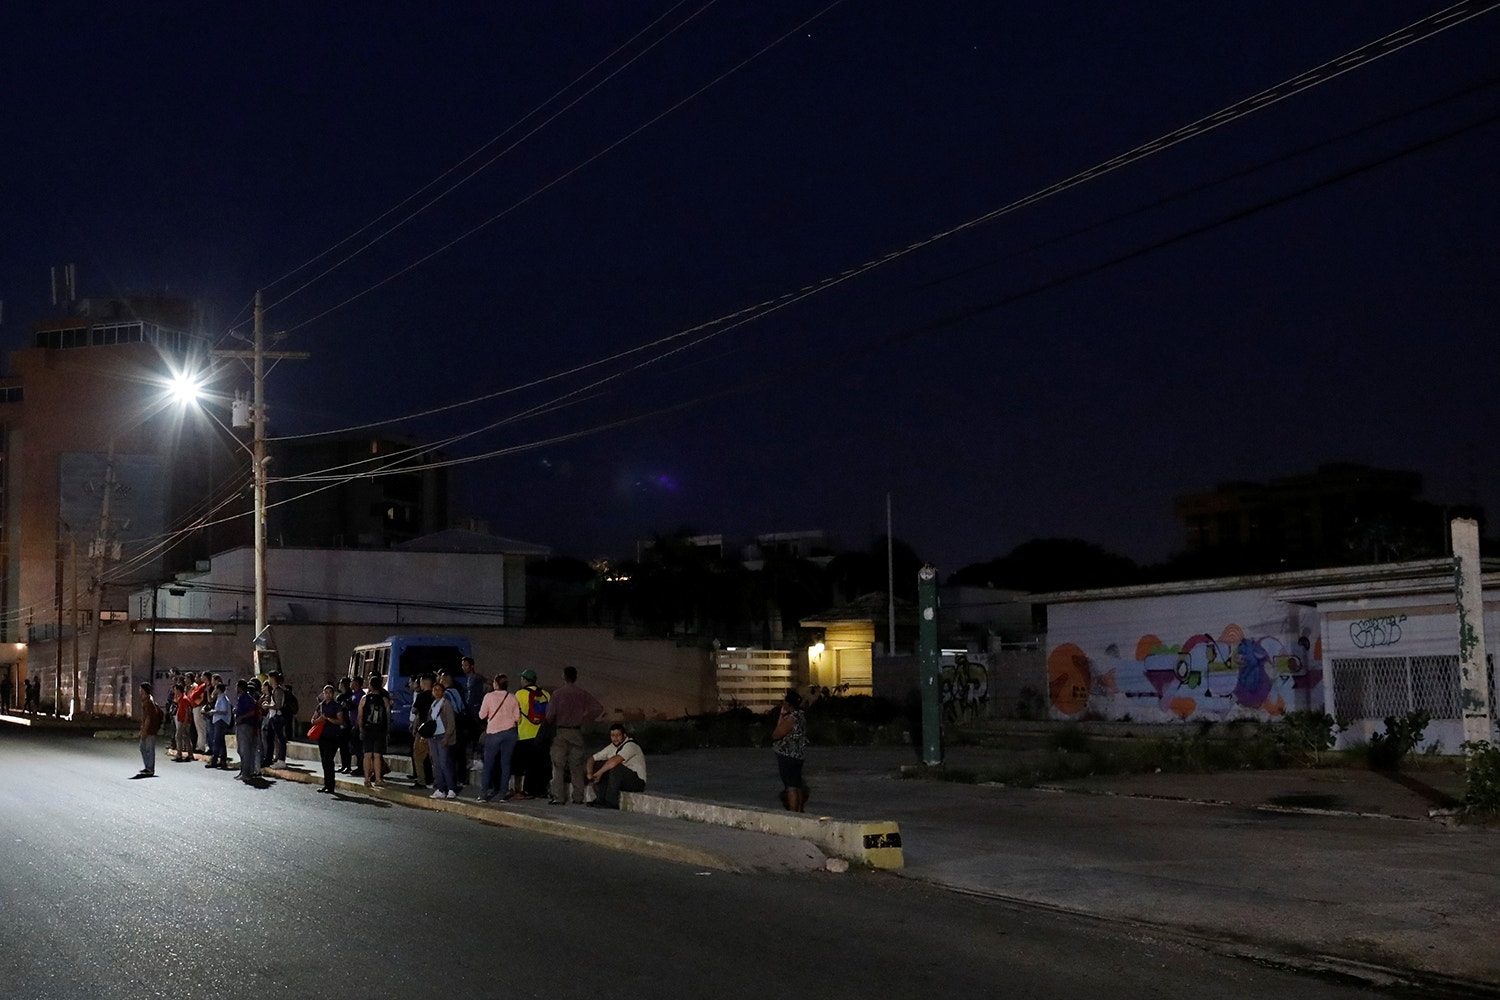  Pessoas aguardam pelos transportes p&uacute;blicos /Foto: Marco Bello - Reuters 